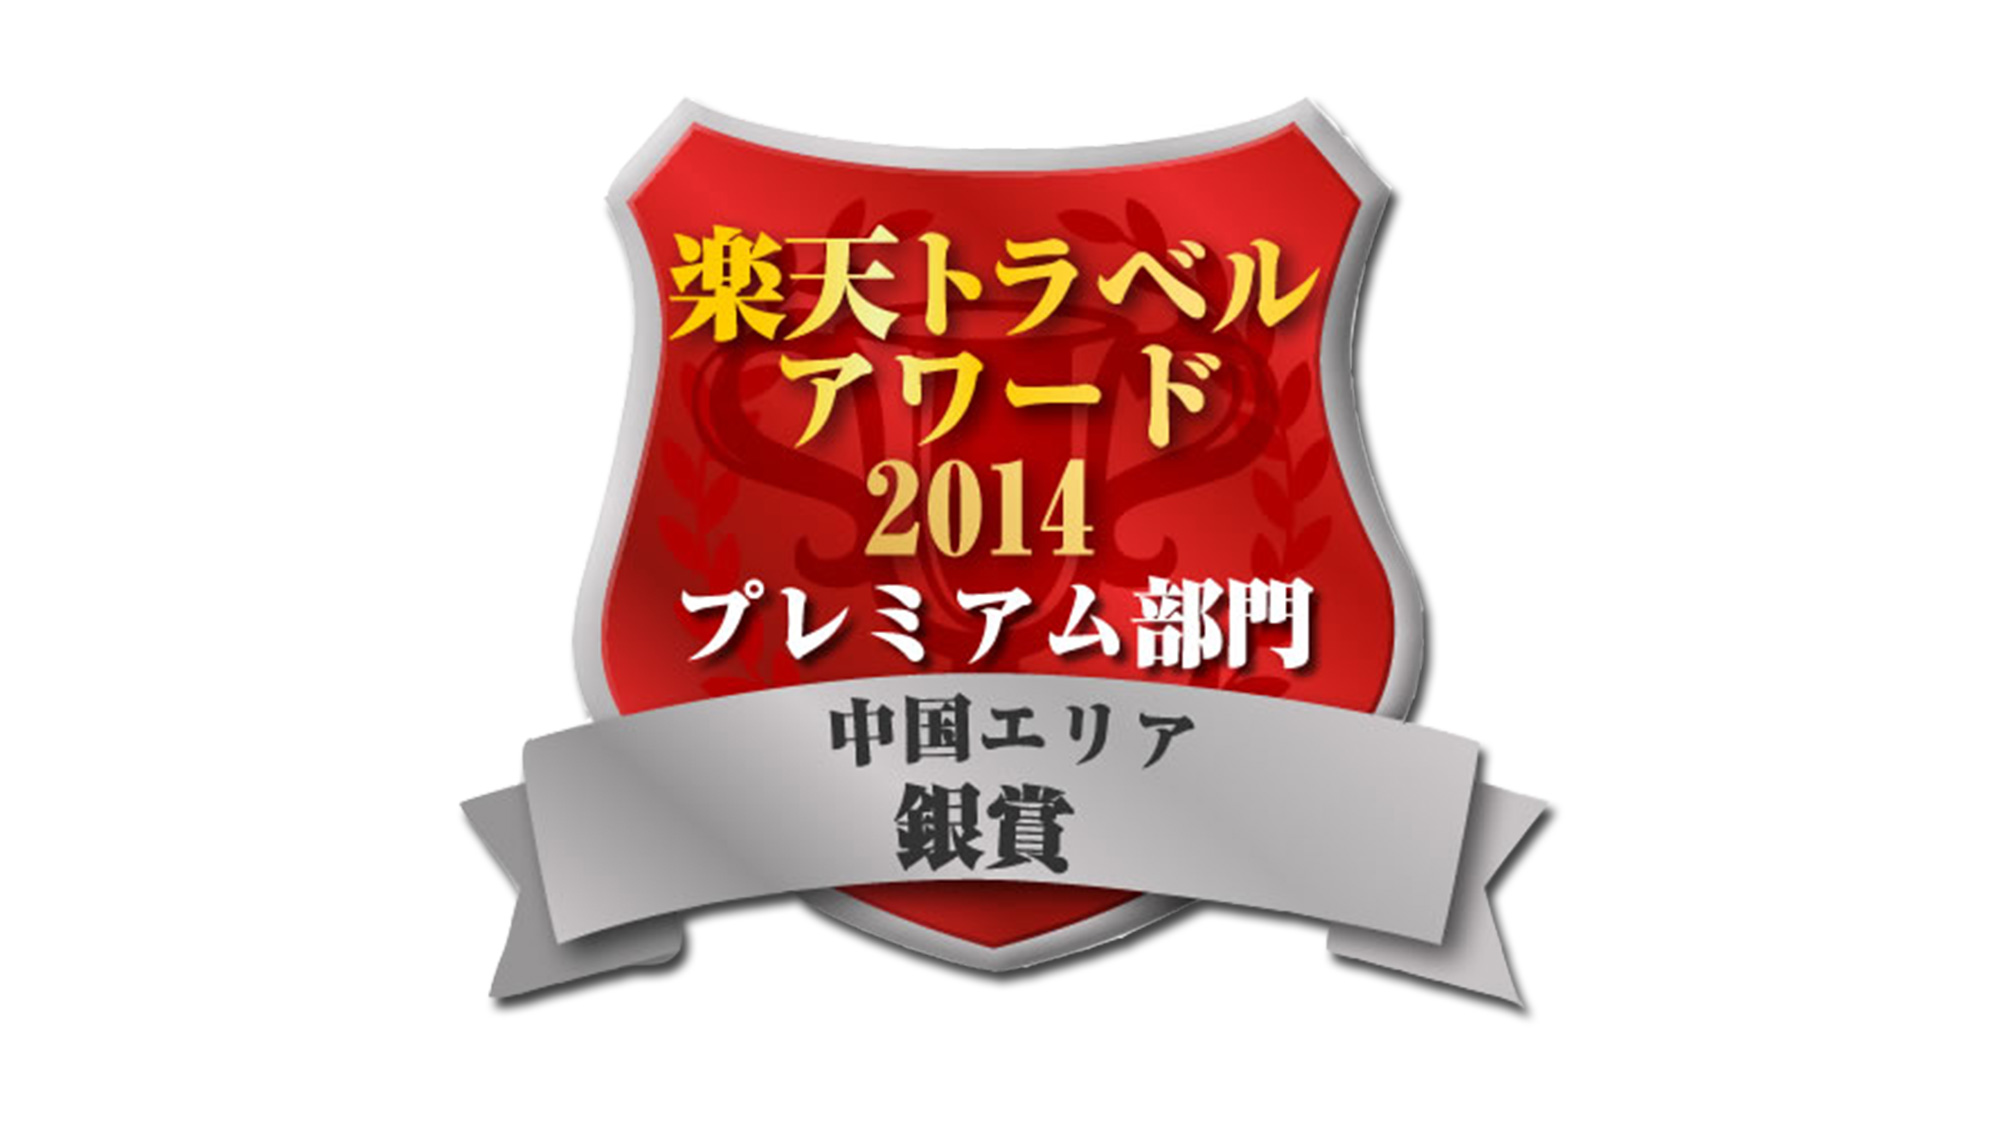 【エンブレム】楽天トラベルアワード2014中国シルバー受賞